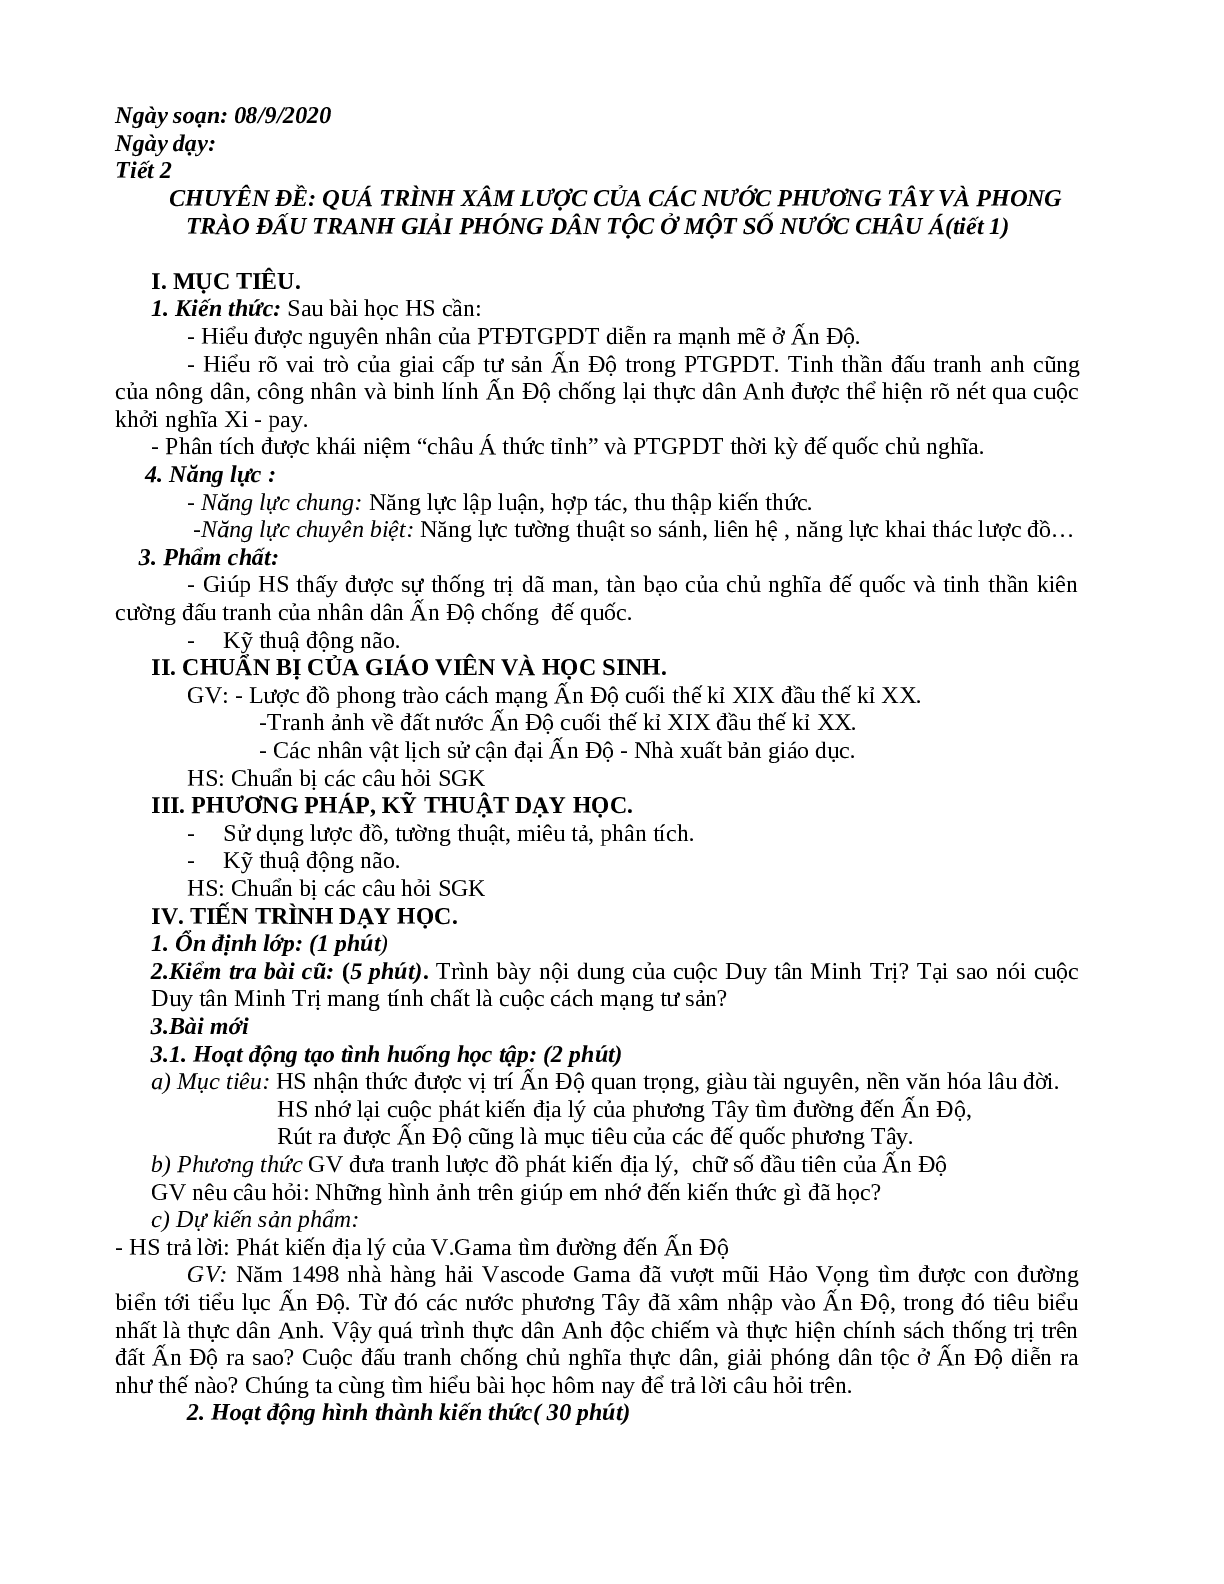 Giáo án Lịch Sử 11 mới nhất (trang 5)